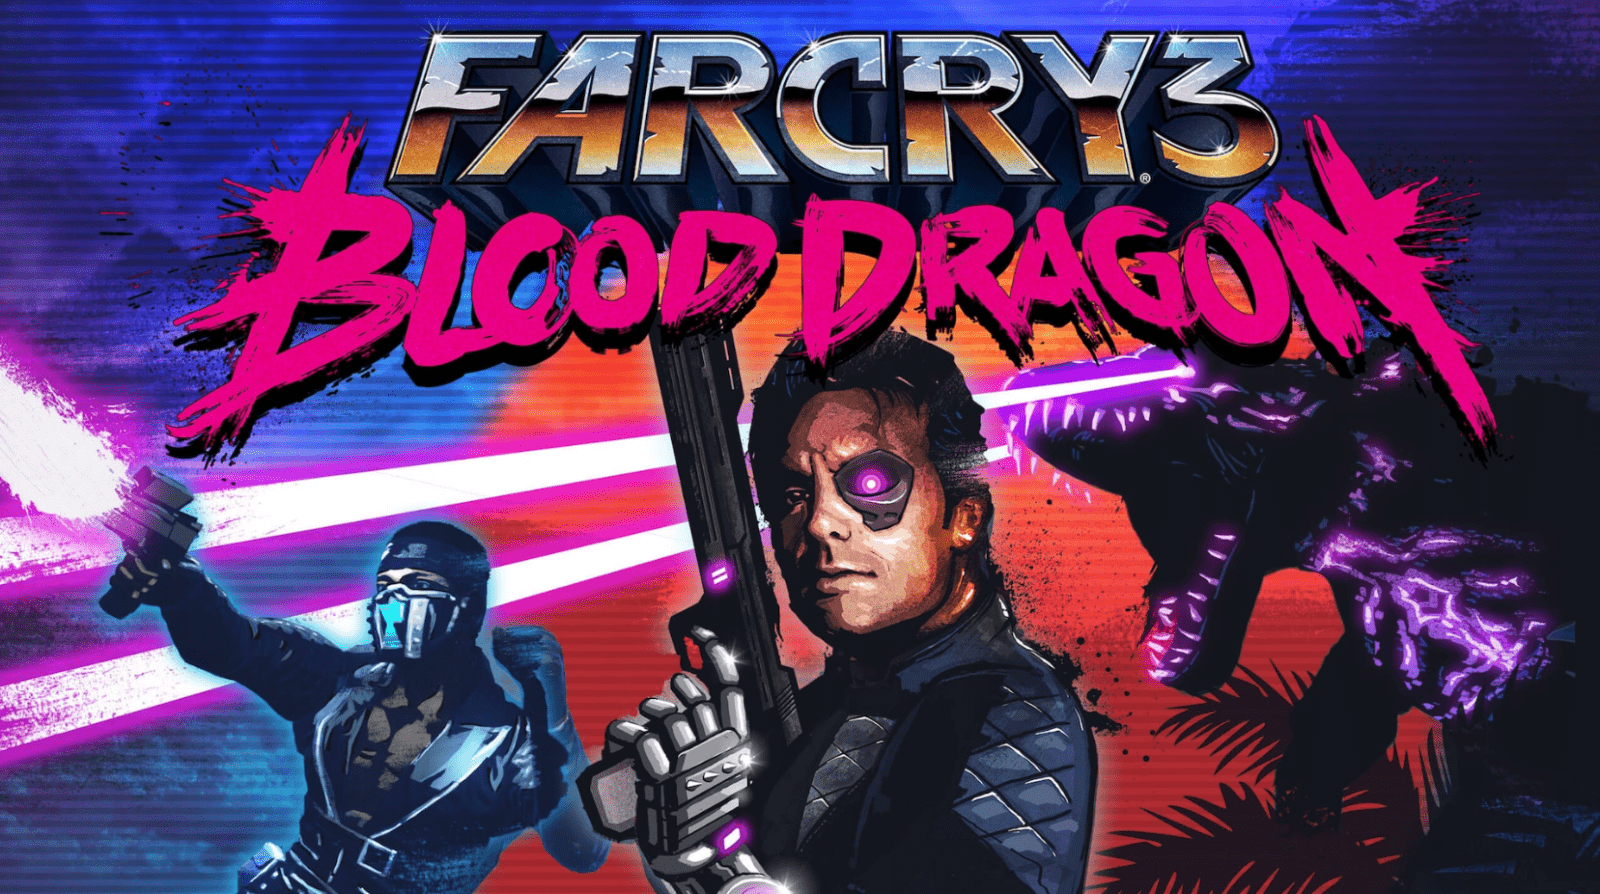 Creative Director Far Cry 3: Blood Dragon Buka Studio Baru